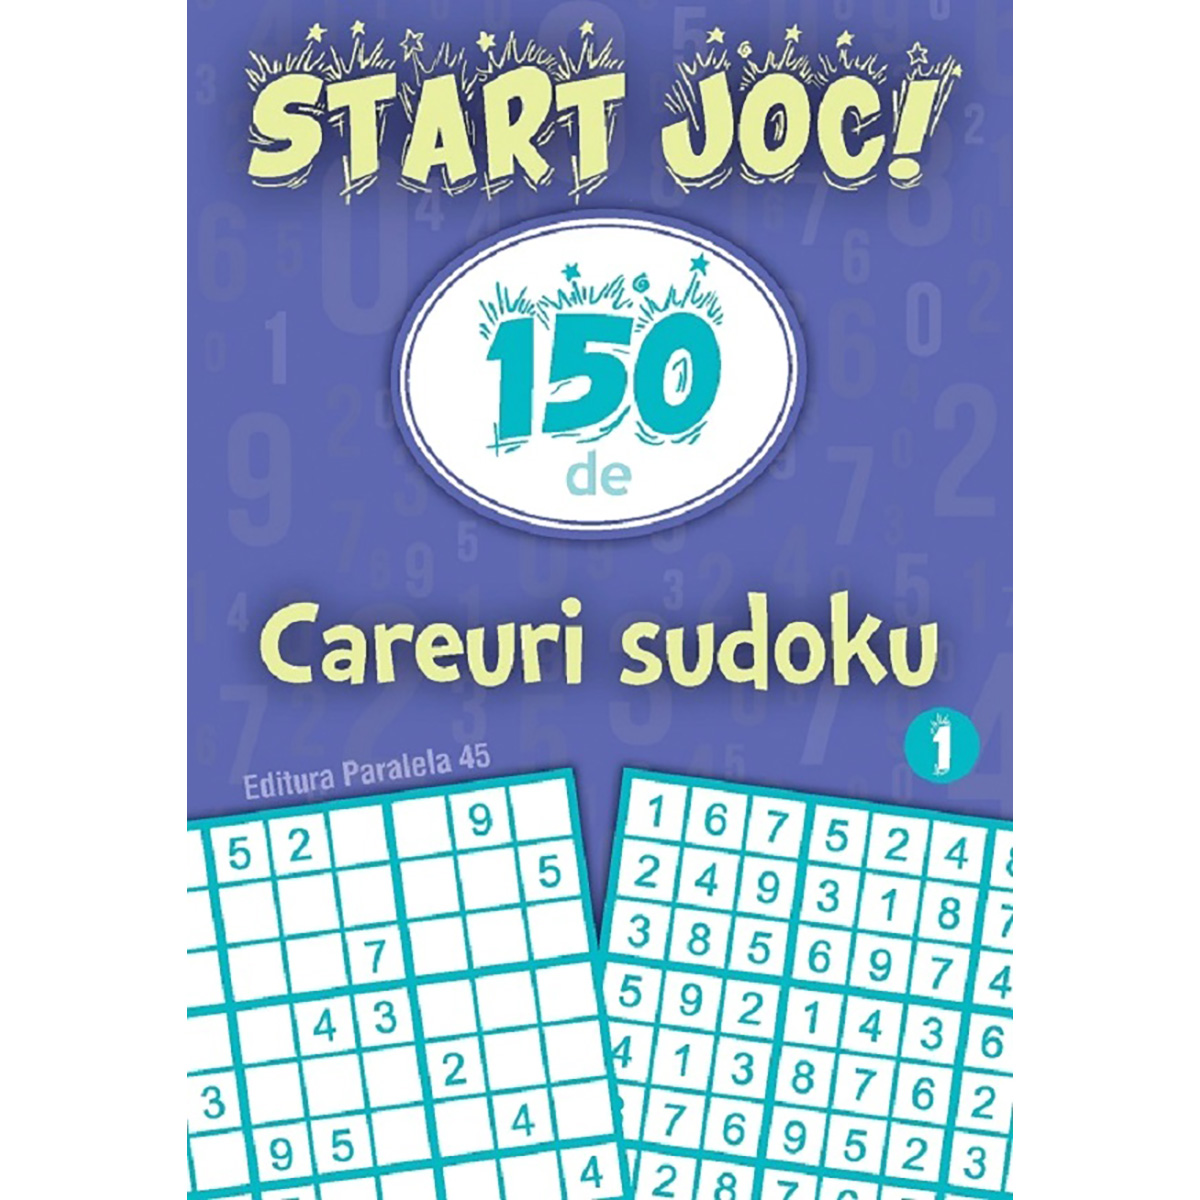 Start joc 150 de careuri sudoku. Vol. 1